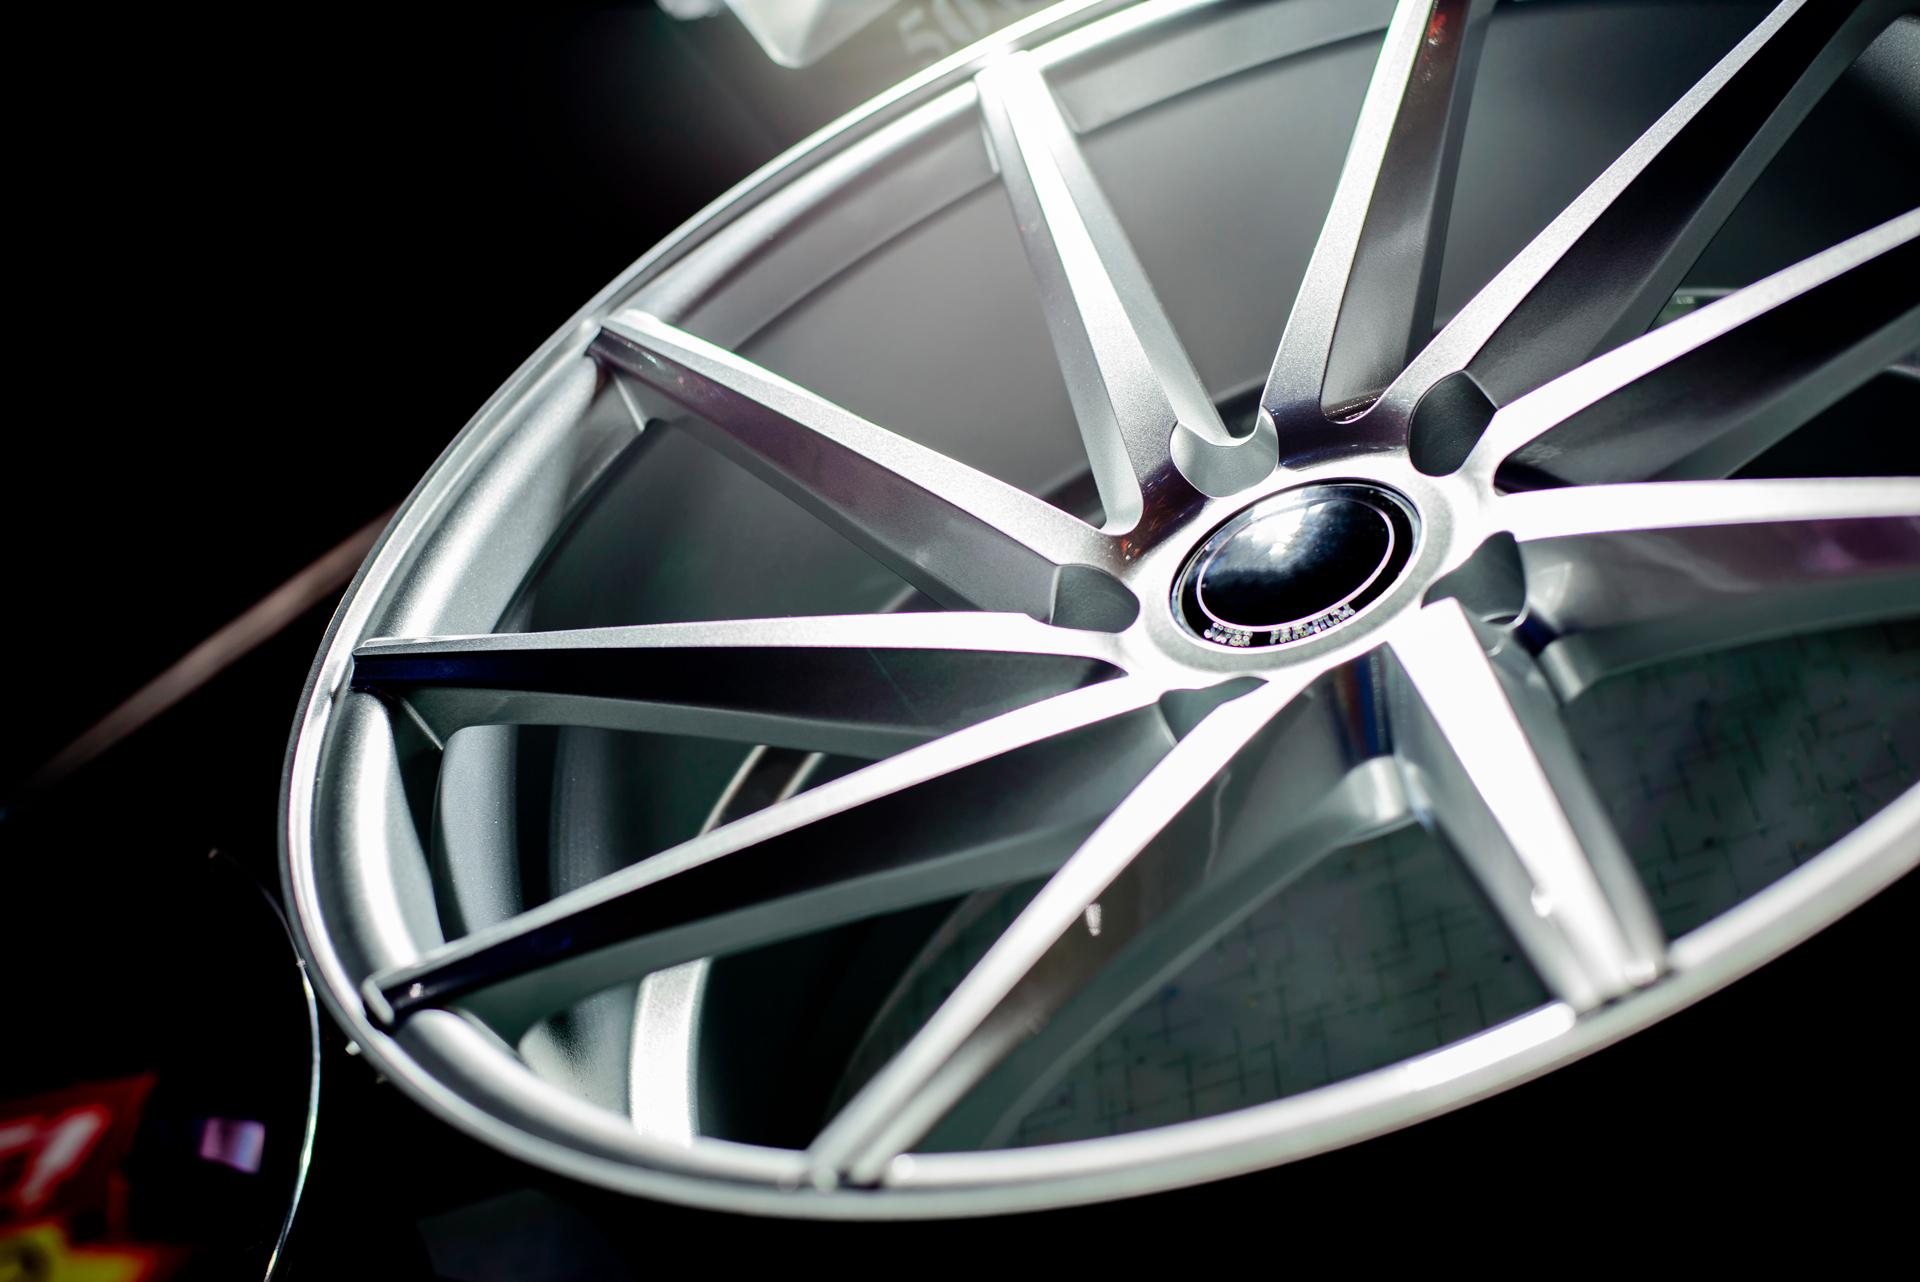 Современный автомобиль может содержать до 150 кг алюминия. В том числе популярность набирают литые алюминиевые колёсные диски. Фото © Shutterstock